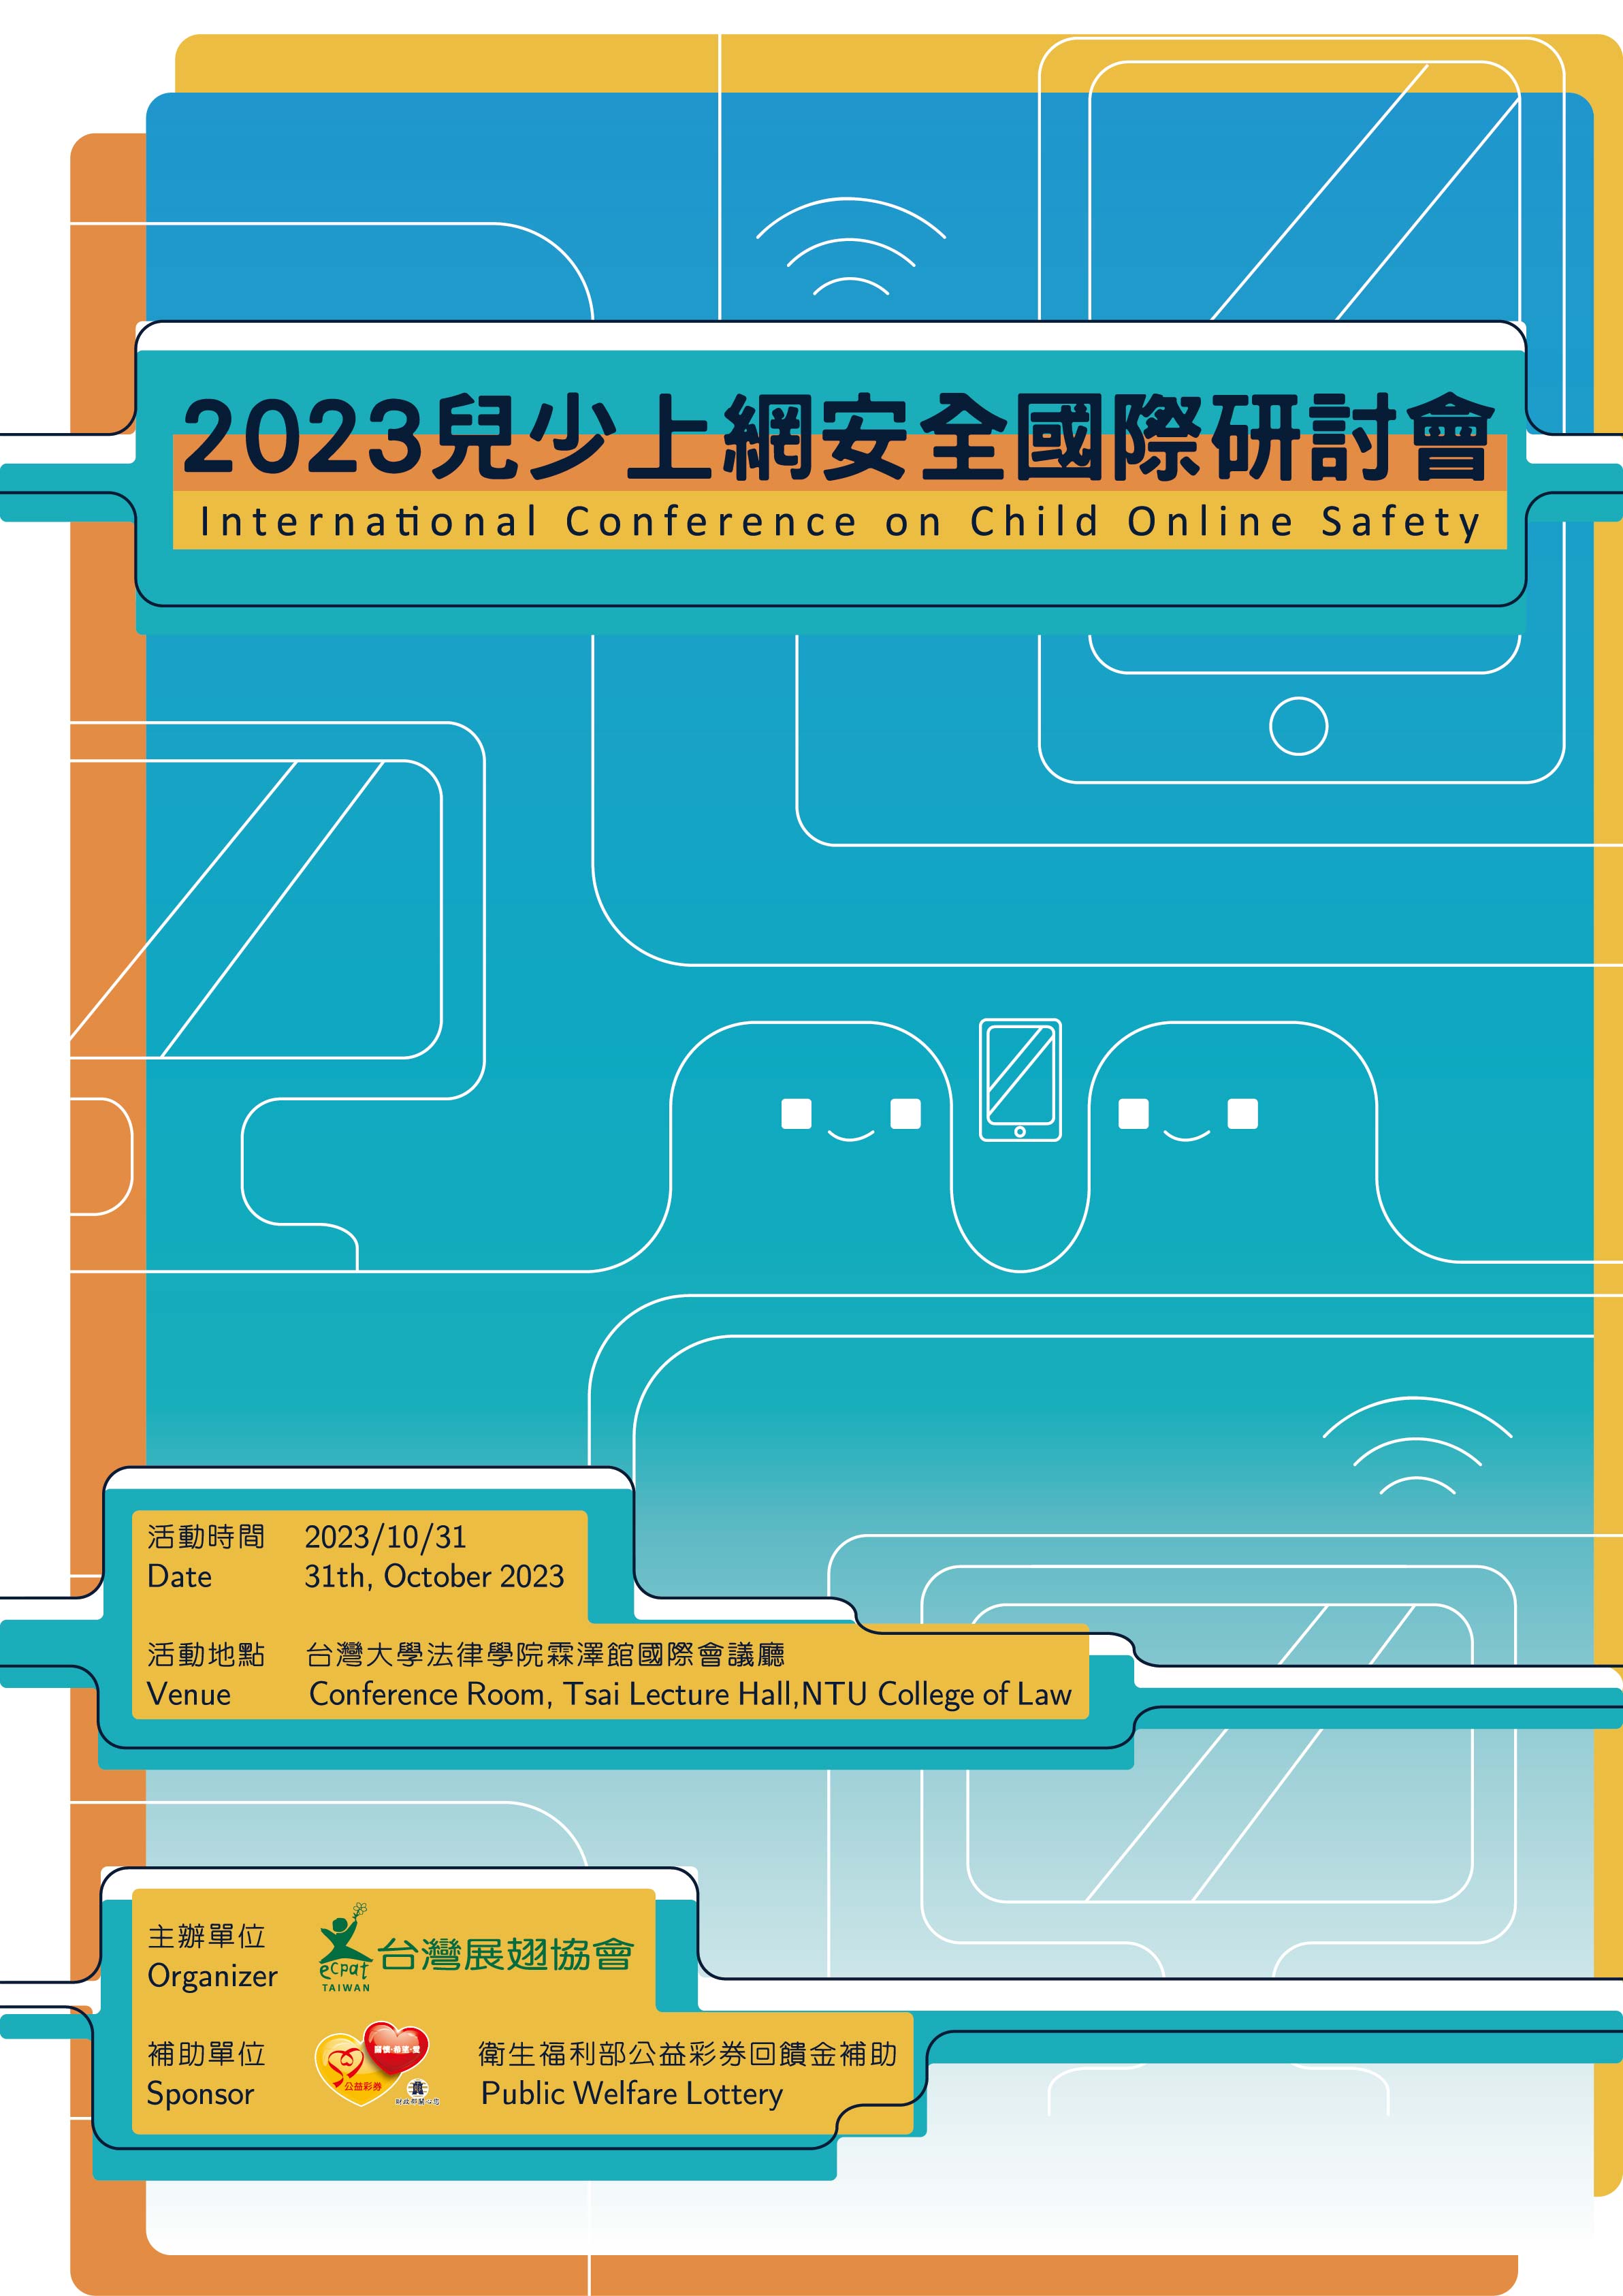 【台灣展翅協會】鼓勵參與「2023年兒少上網安全國際研討會」